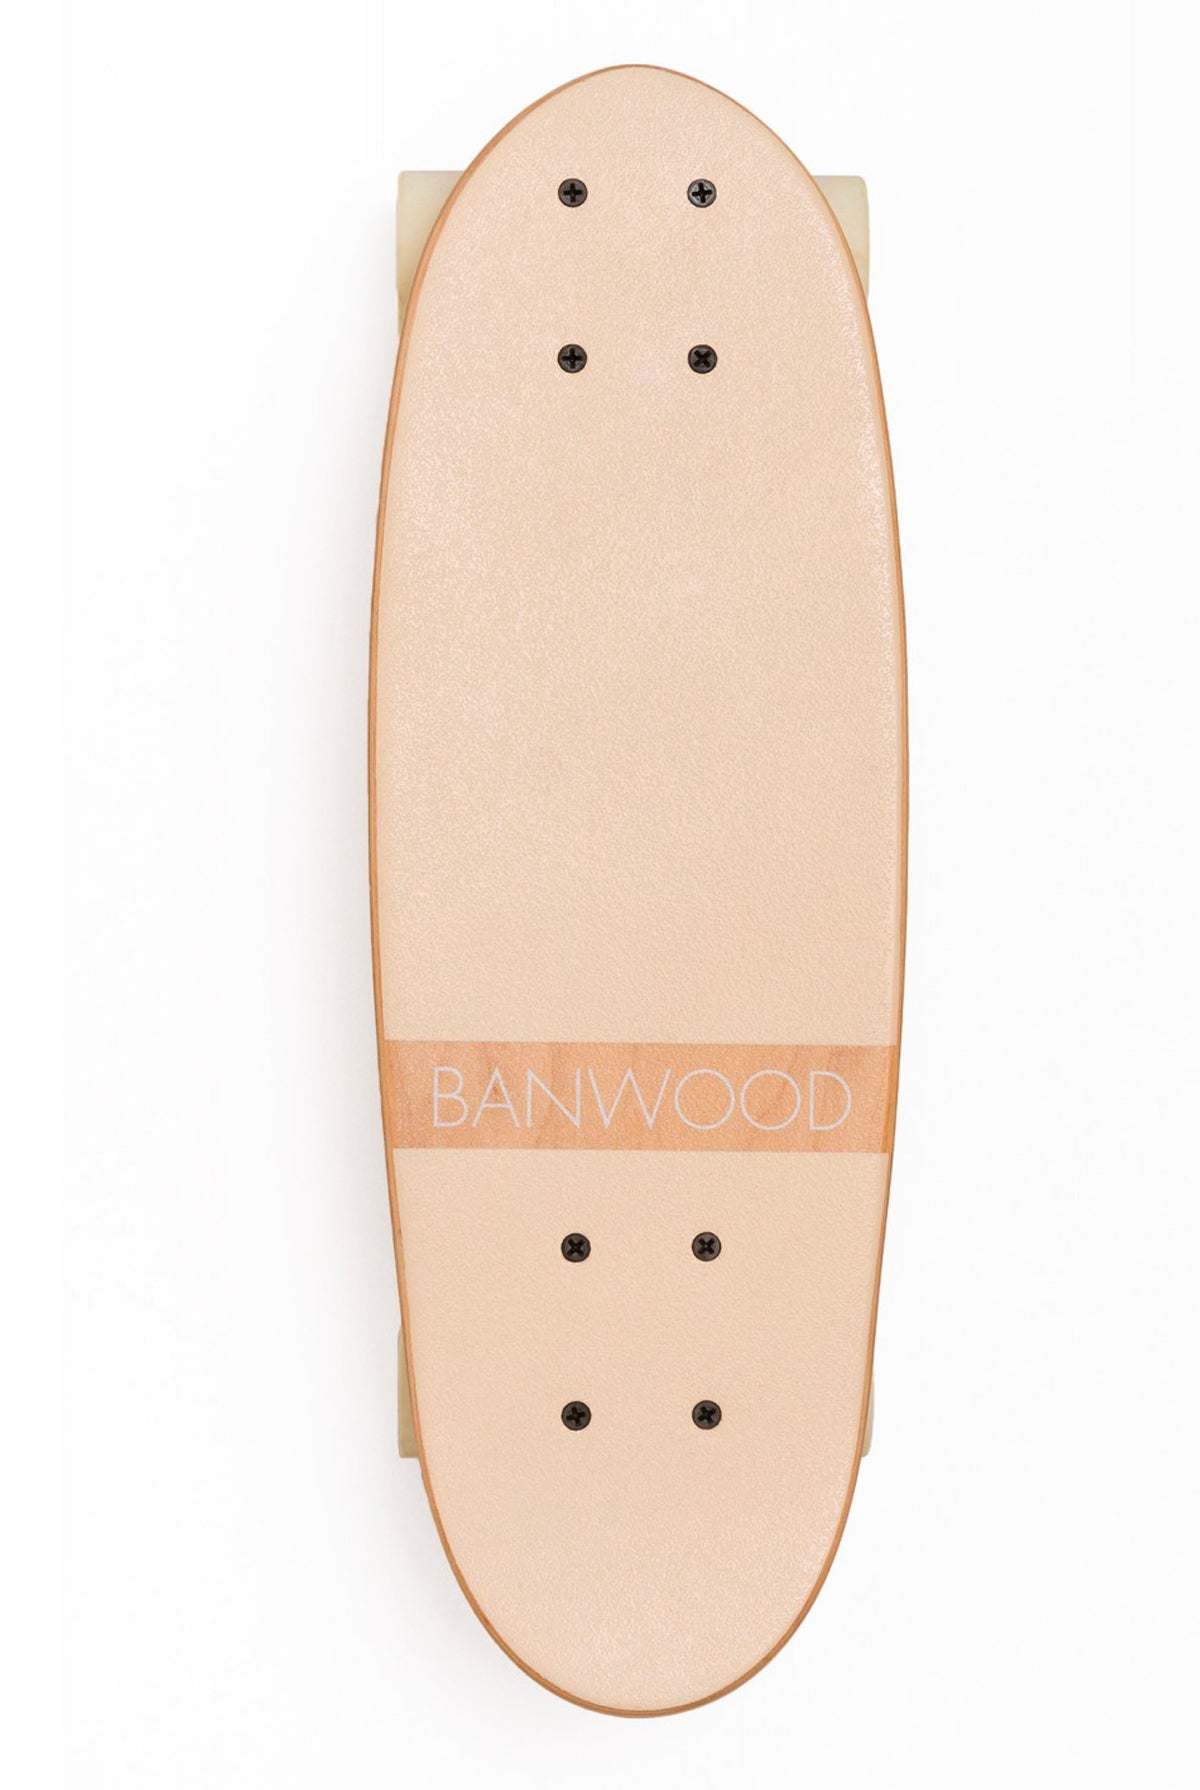 Banwood SKATEBOARD BANWOOD CREAM